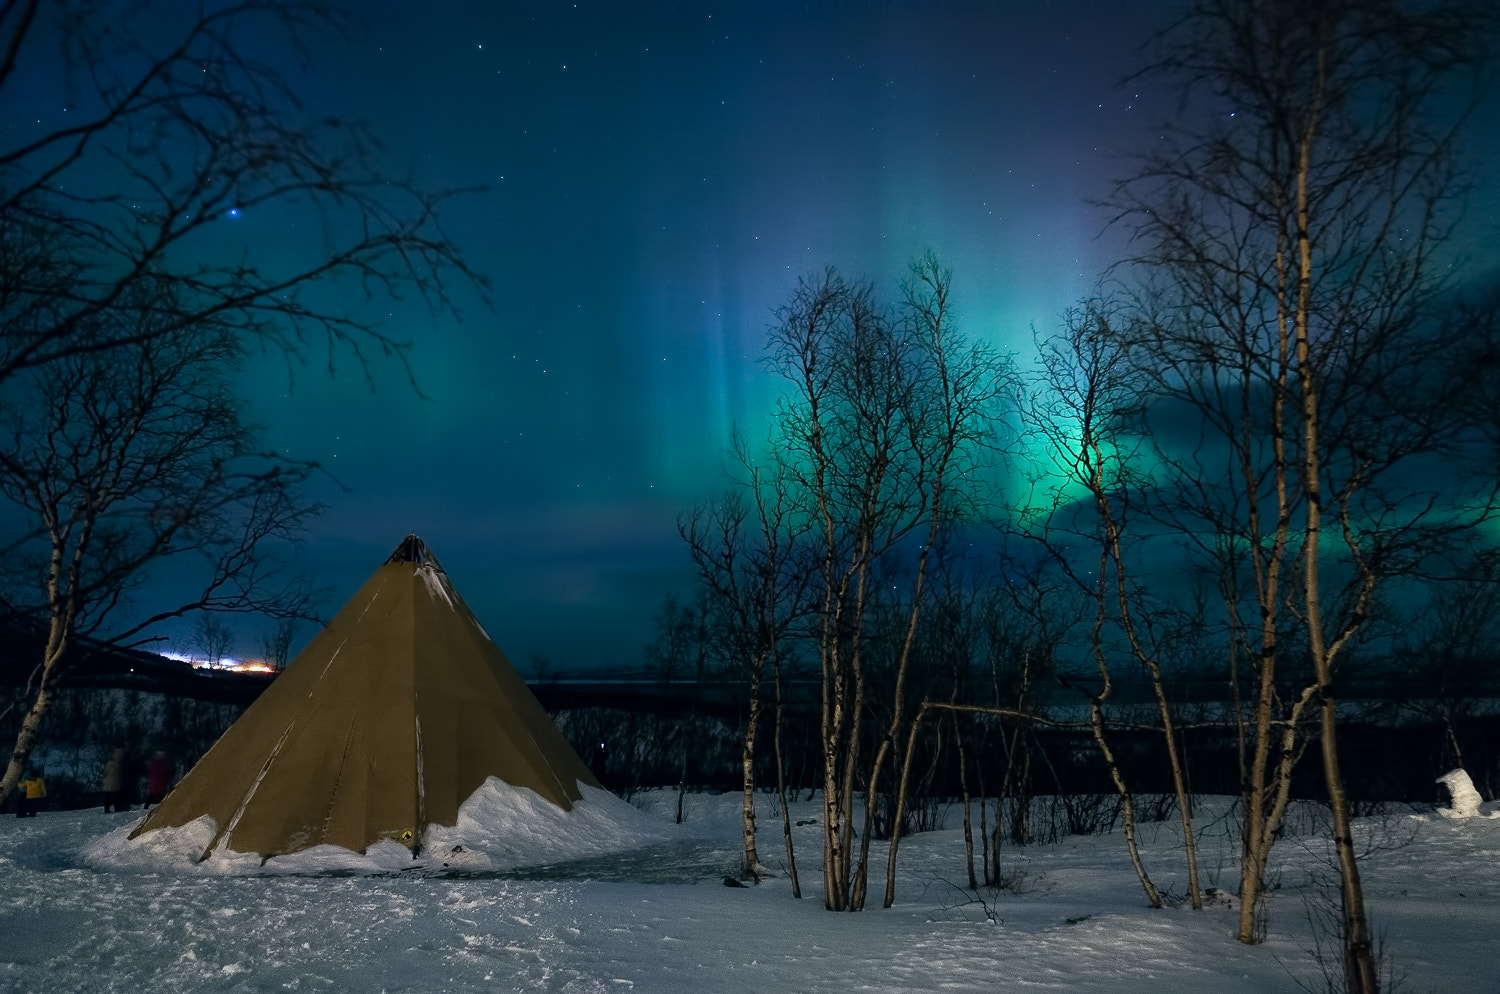 Canon EOS 5D sample photo. Aurora borealis photography